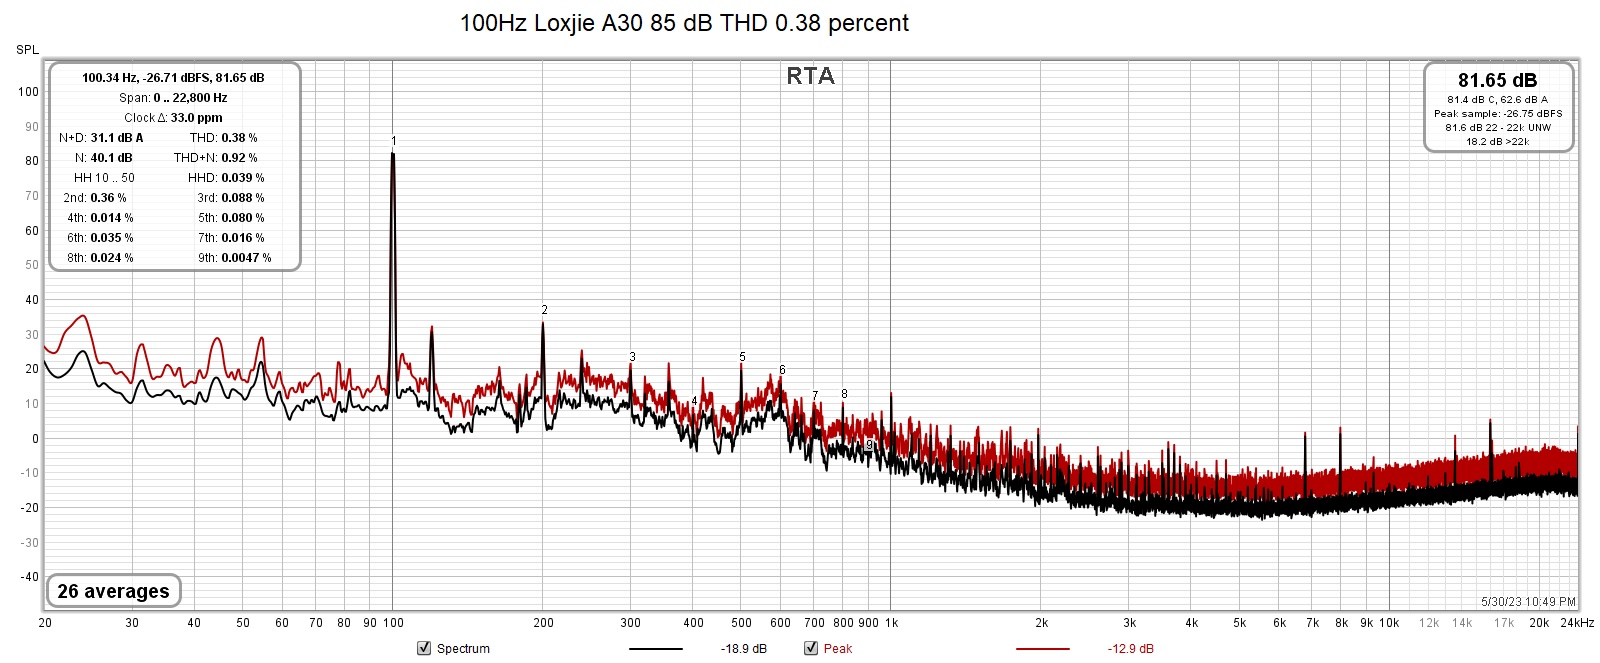 100Hz Loxjie A30 85 dB THD 0.38 percent.jpg